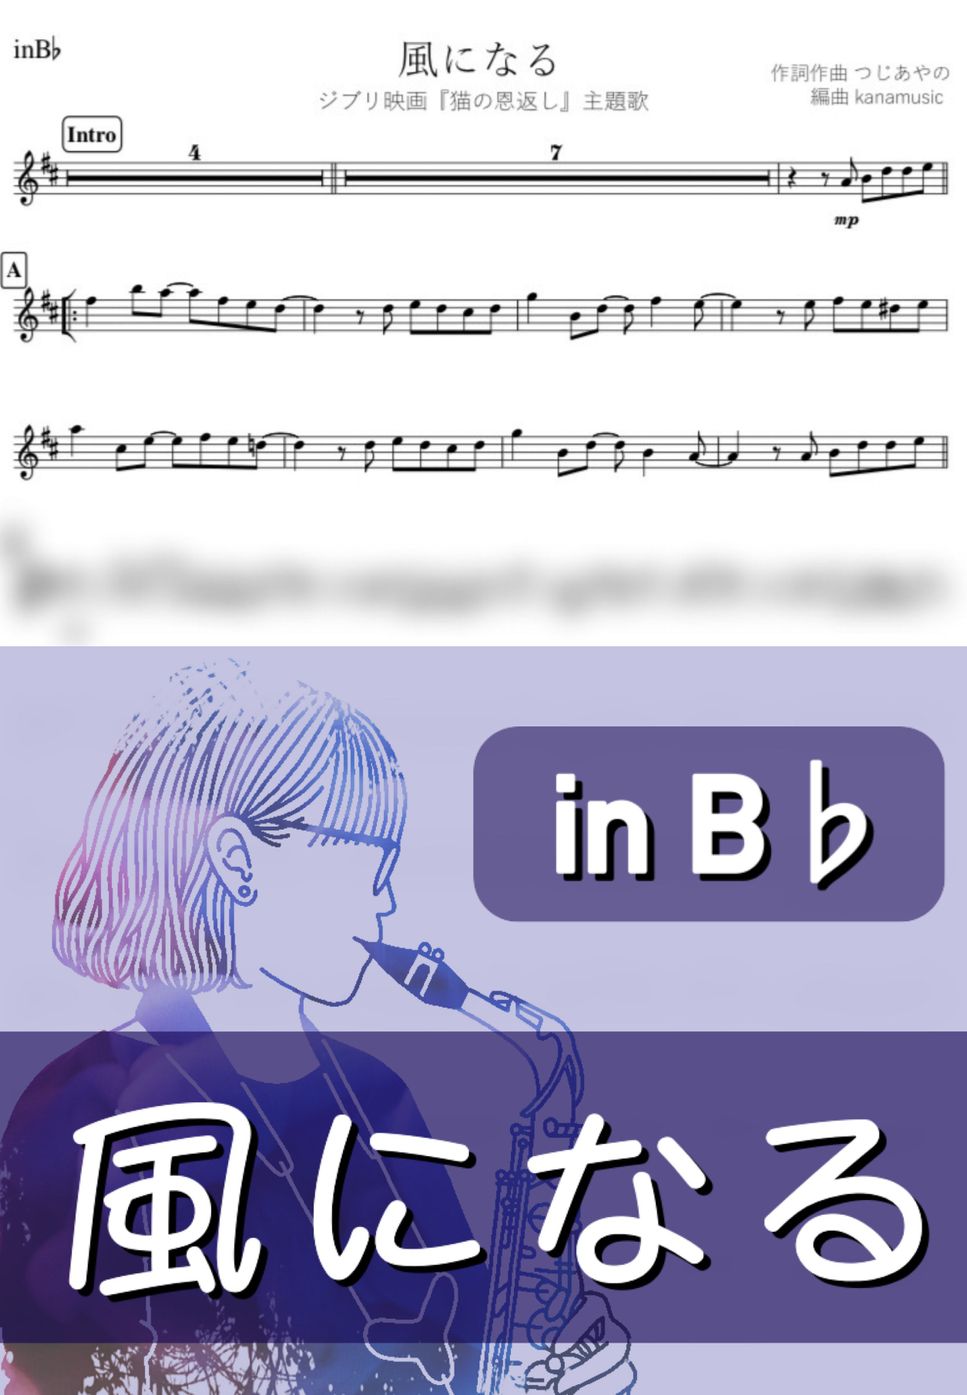 ジブリ 猫の恩返し - 風になる (B♭) by kanamusic